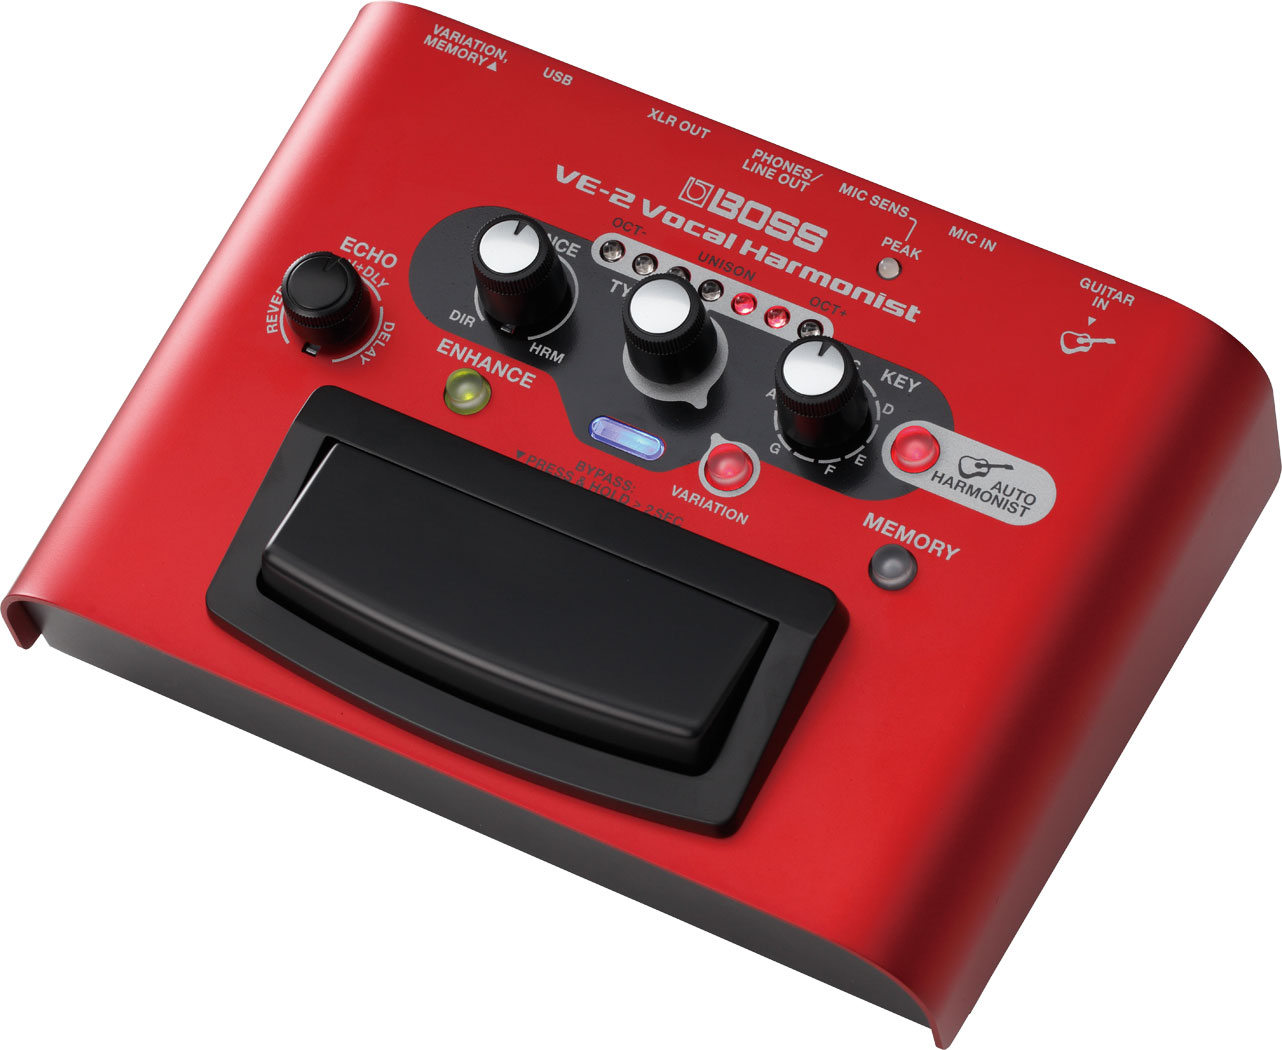 Effect Boss Vocal Harmonist VE2 là thiết bị tạo ra giọng hát bè hòa âm dành cho ca sĩ. Sử dụng pin AA hoặc Adaptor, thiết bị có thể tạo ra giọng bè theo từng tone được chọn, hoặc bắt tone theo guitar khi kết nối thiết bị với guitar. Bạn có thể tạo ra giọng bè của cả dàn hợp xướng chỉ với 1 thiết bị gọn nhẹ Boss VE2